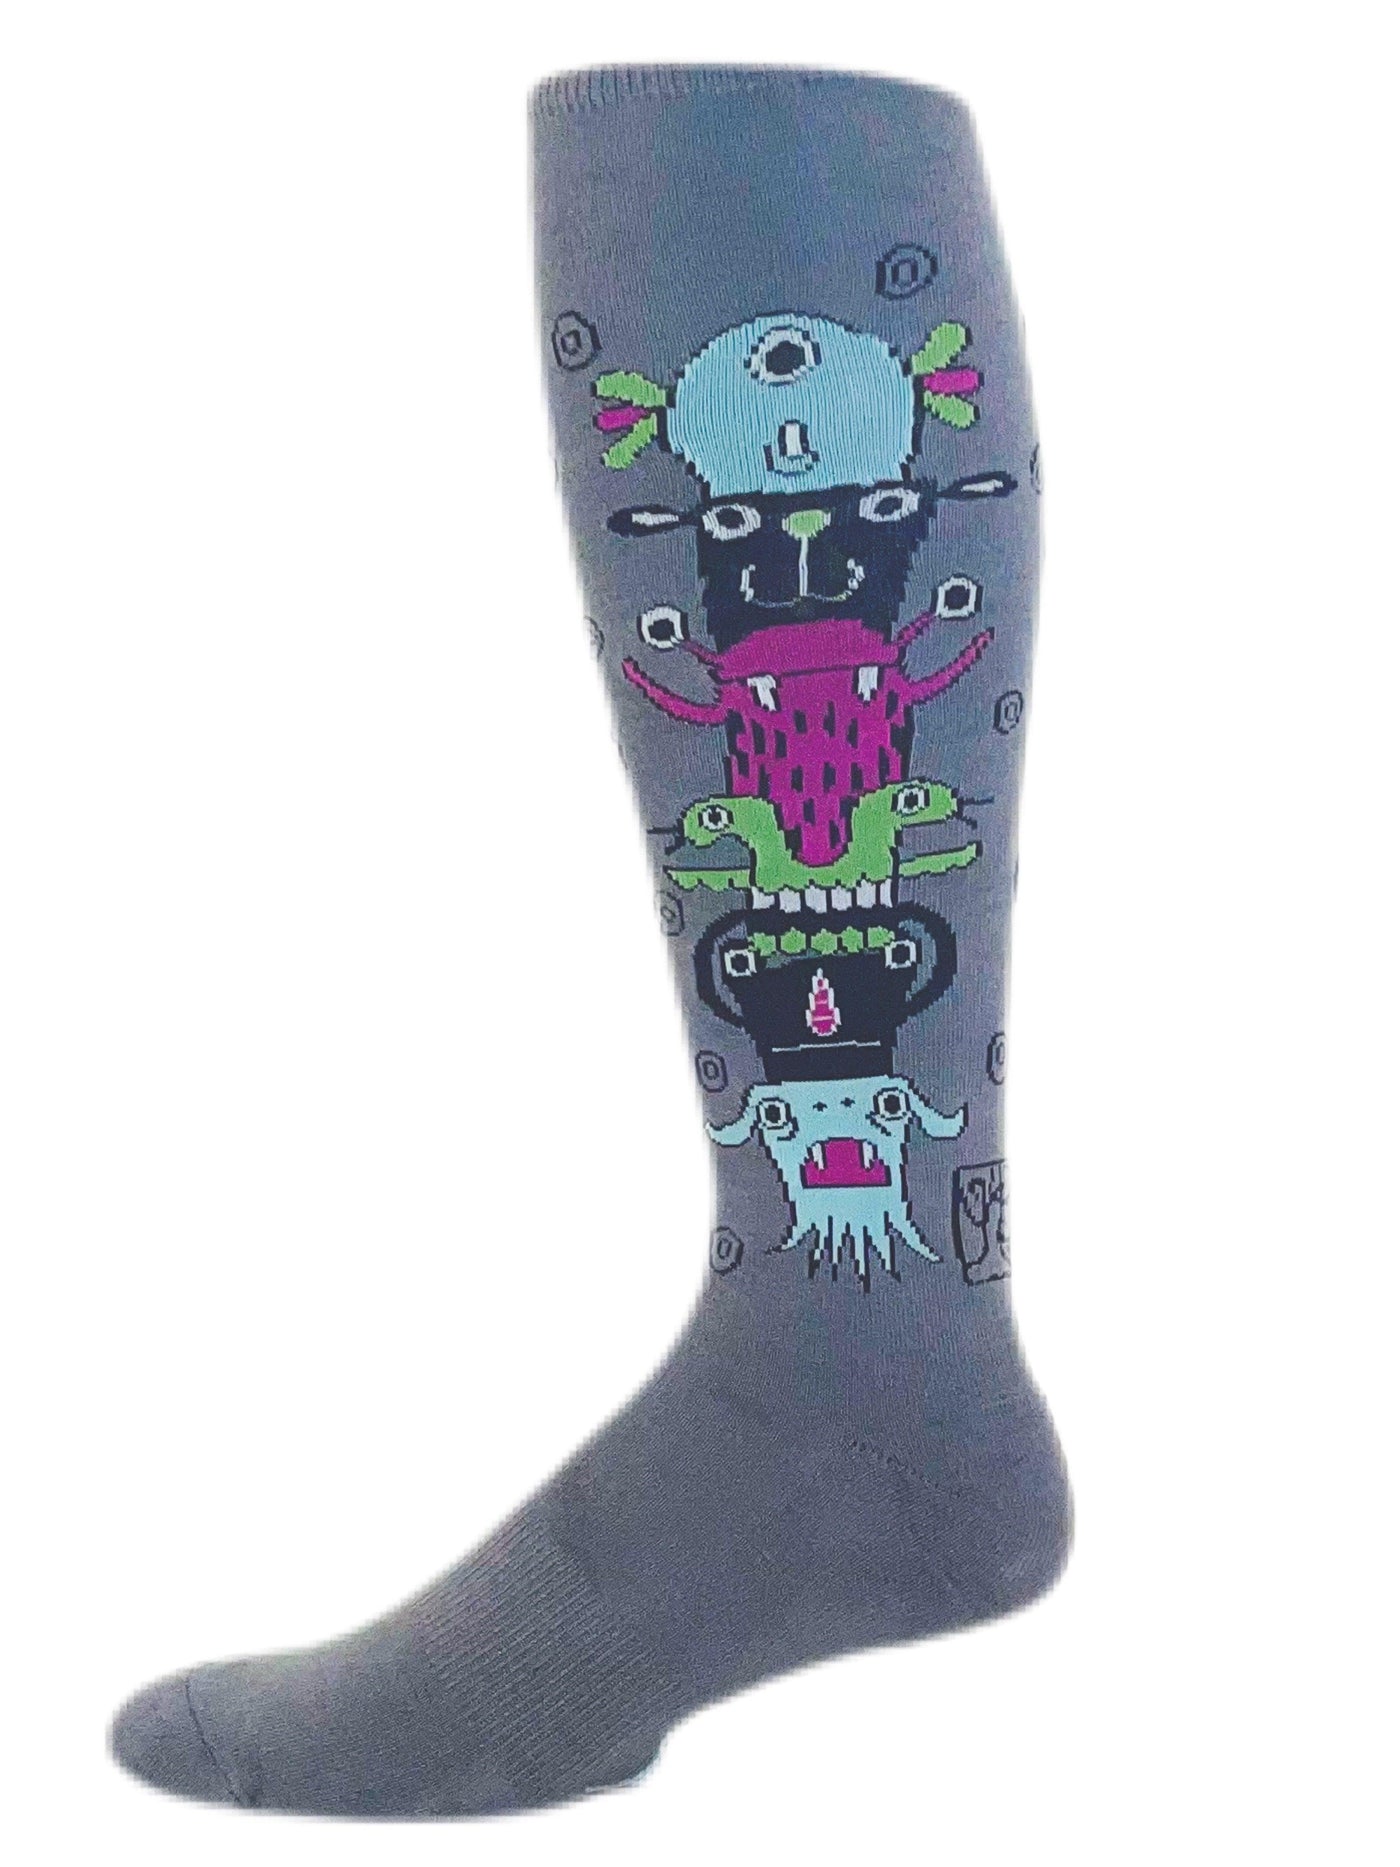 Tomonster Totem - The Sock Monster - The Sock Monster